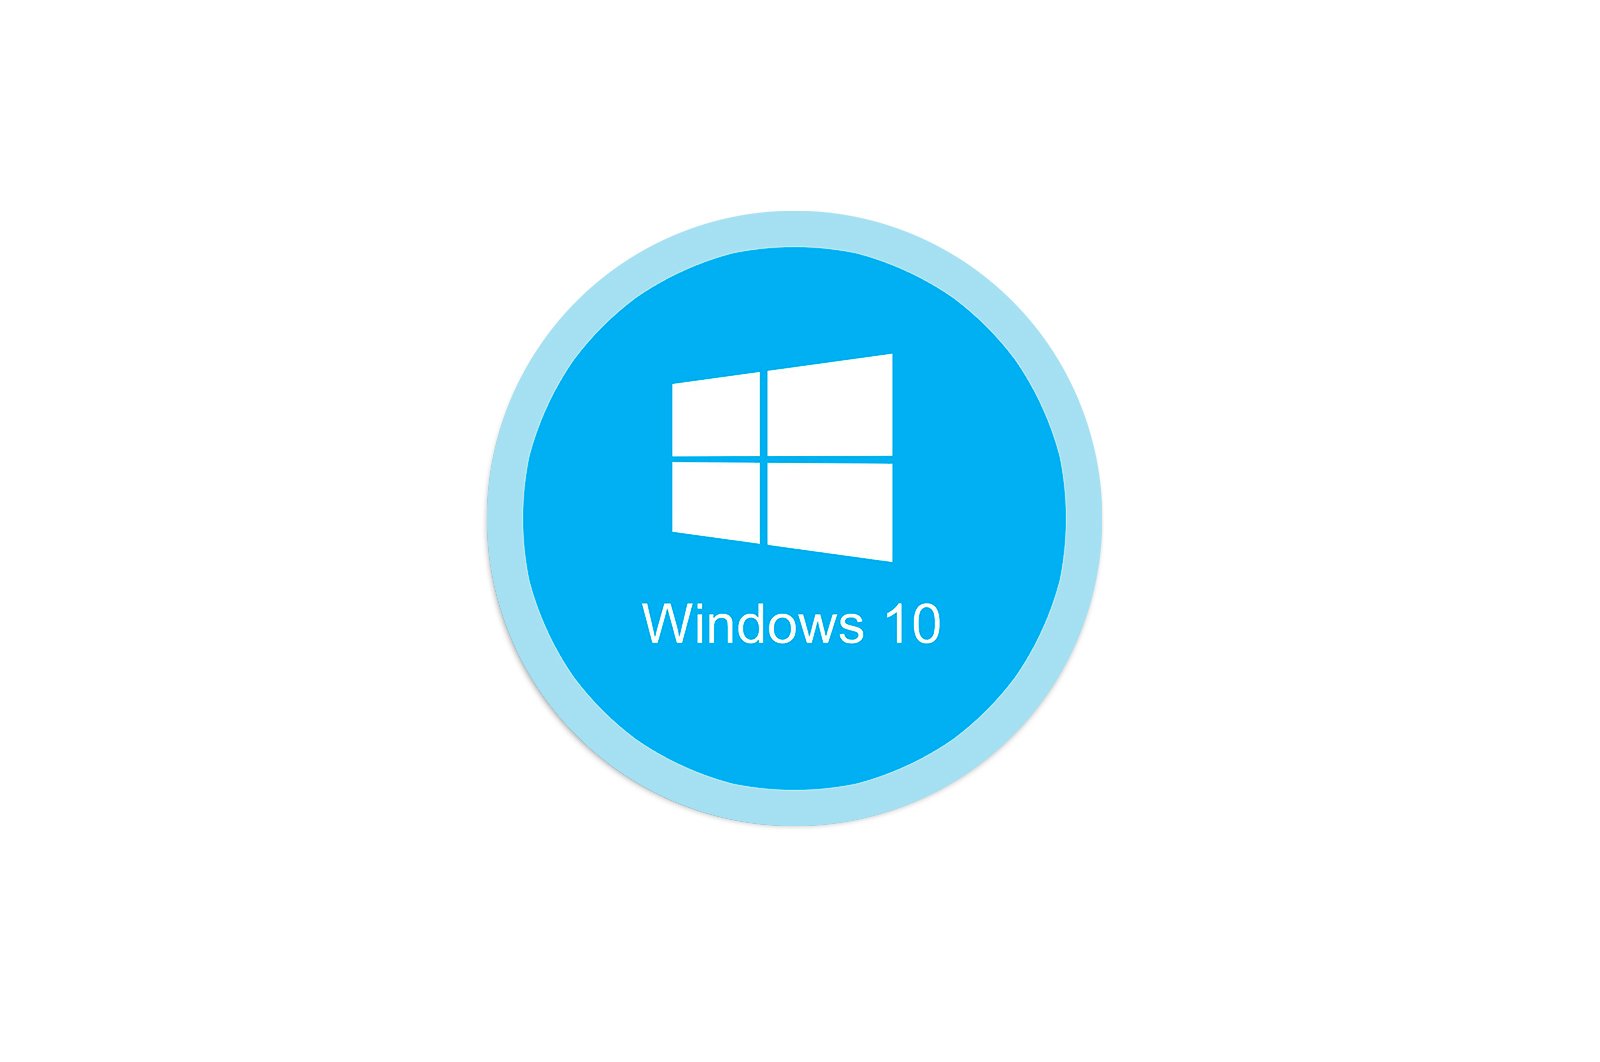 וועגן צו ריין Windows פאָלדער אויף Windows 10 קאָמפּיוטער